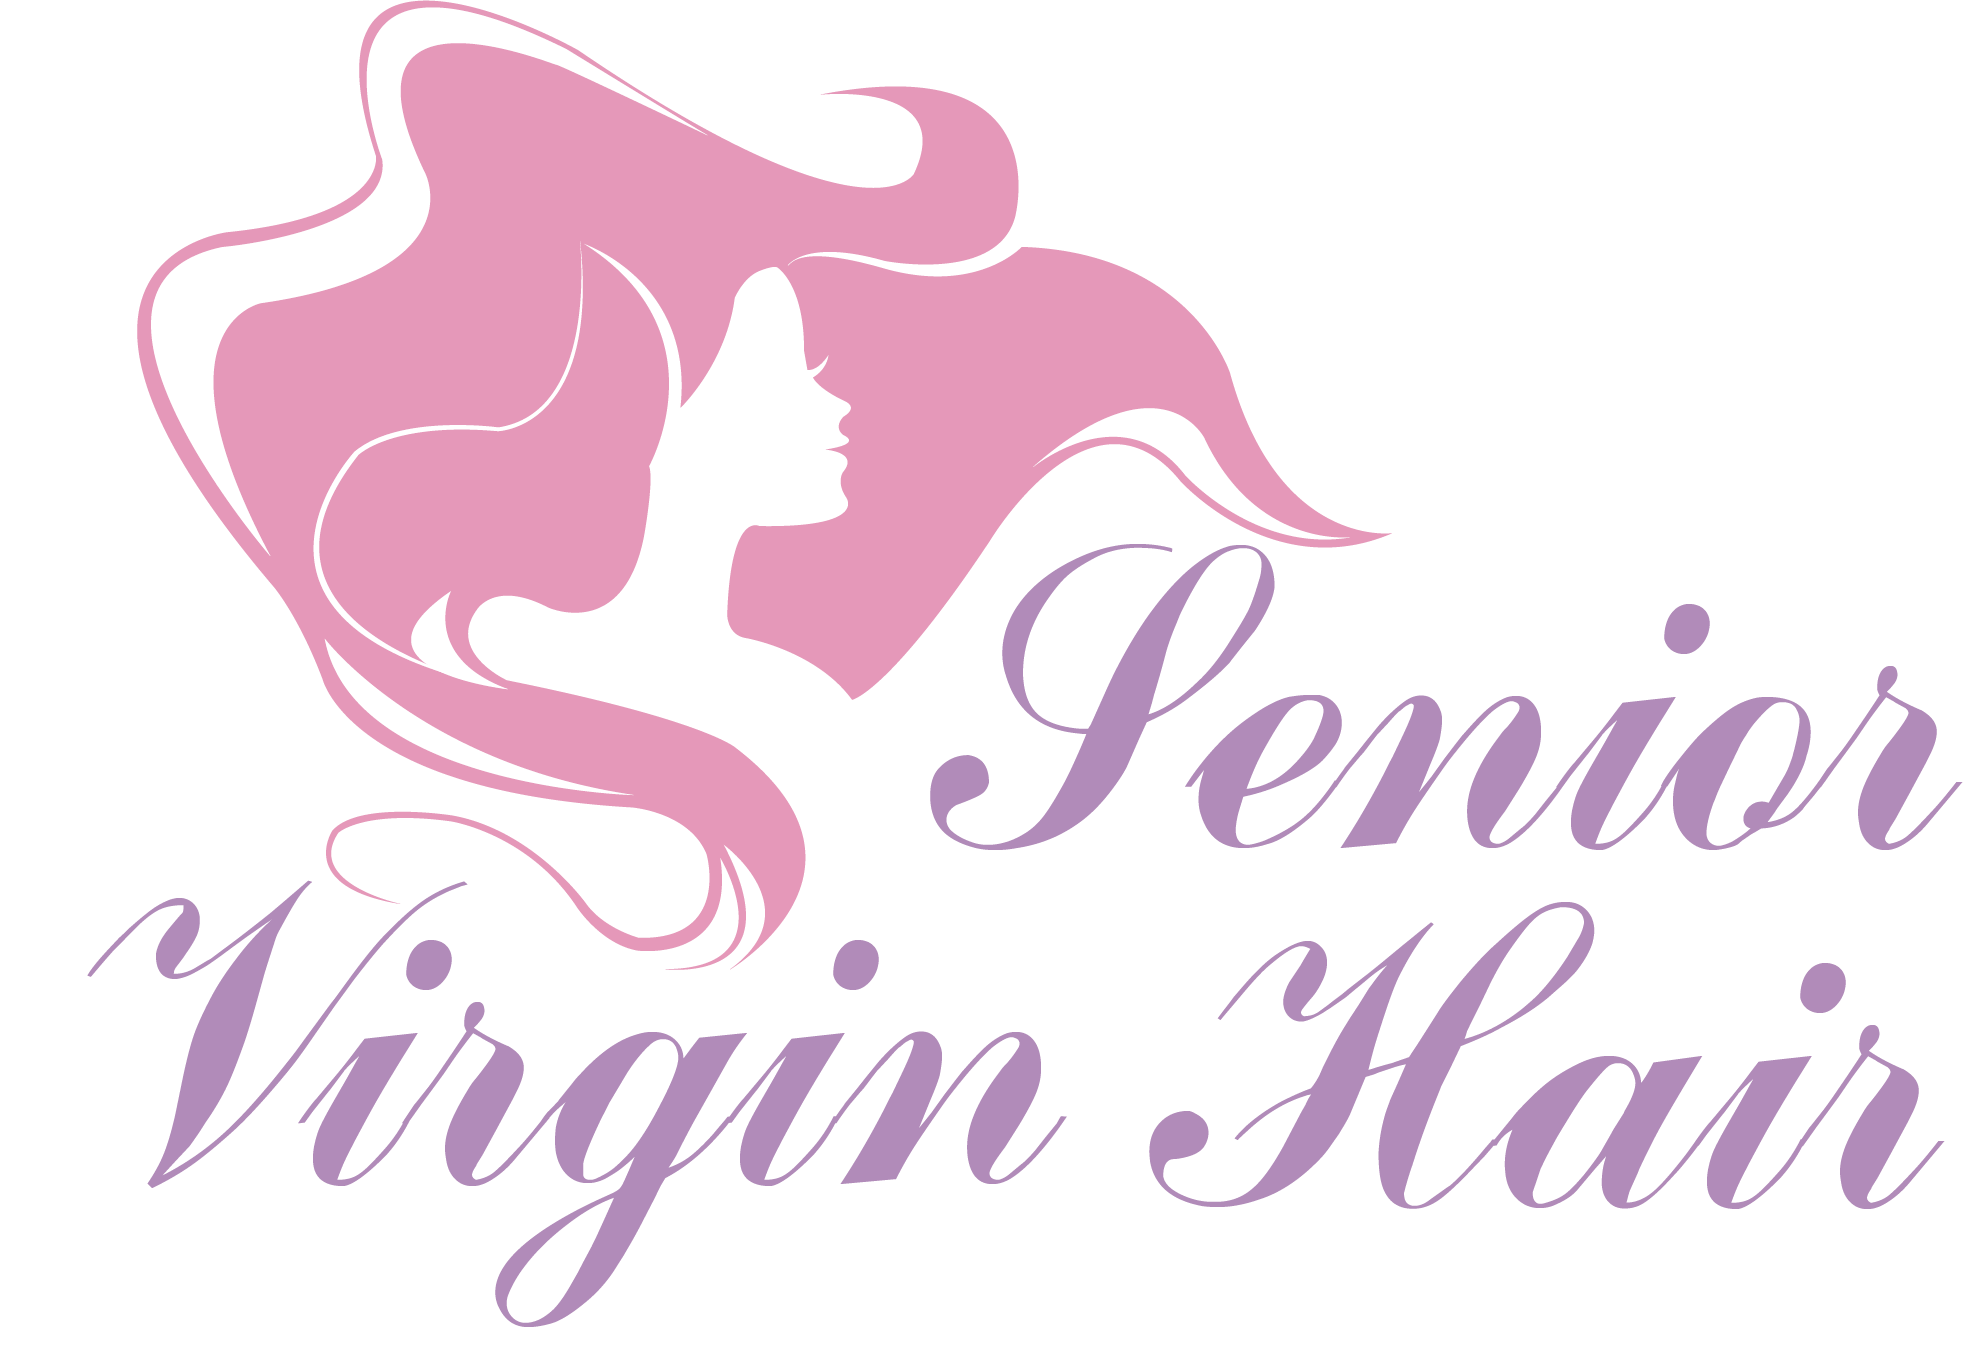 Senior Virgin Hair, Brazilian Hair, 100% Virgin Human Hair Unprocessed, Raw Hair Extension